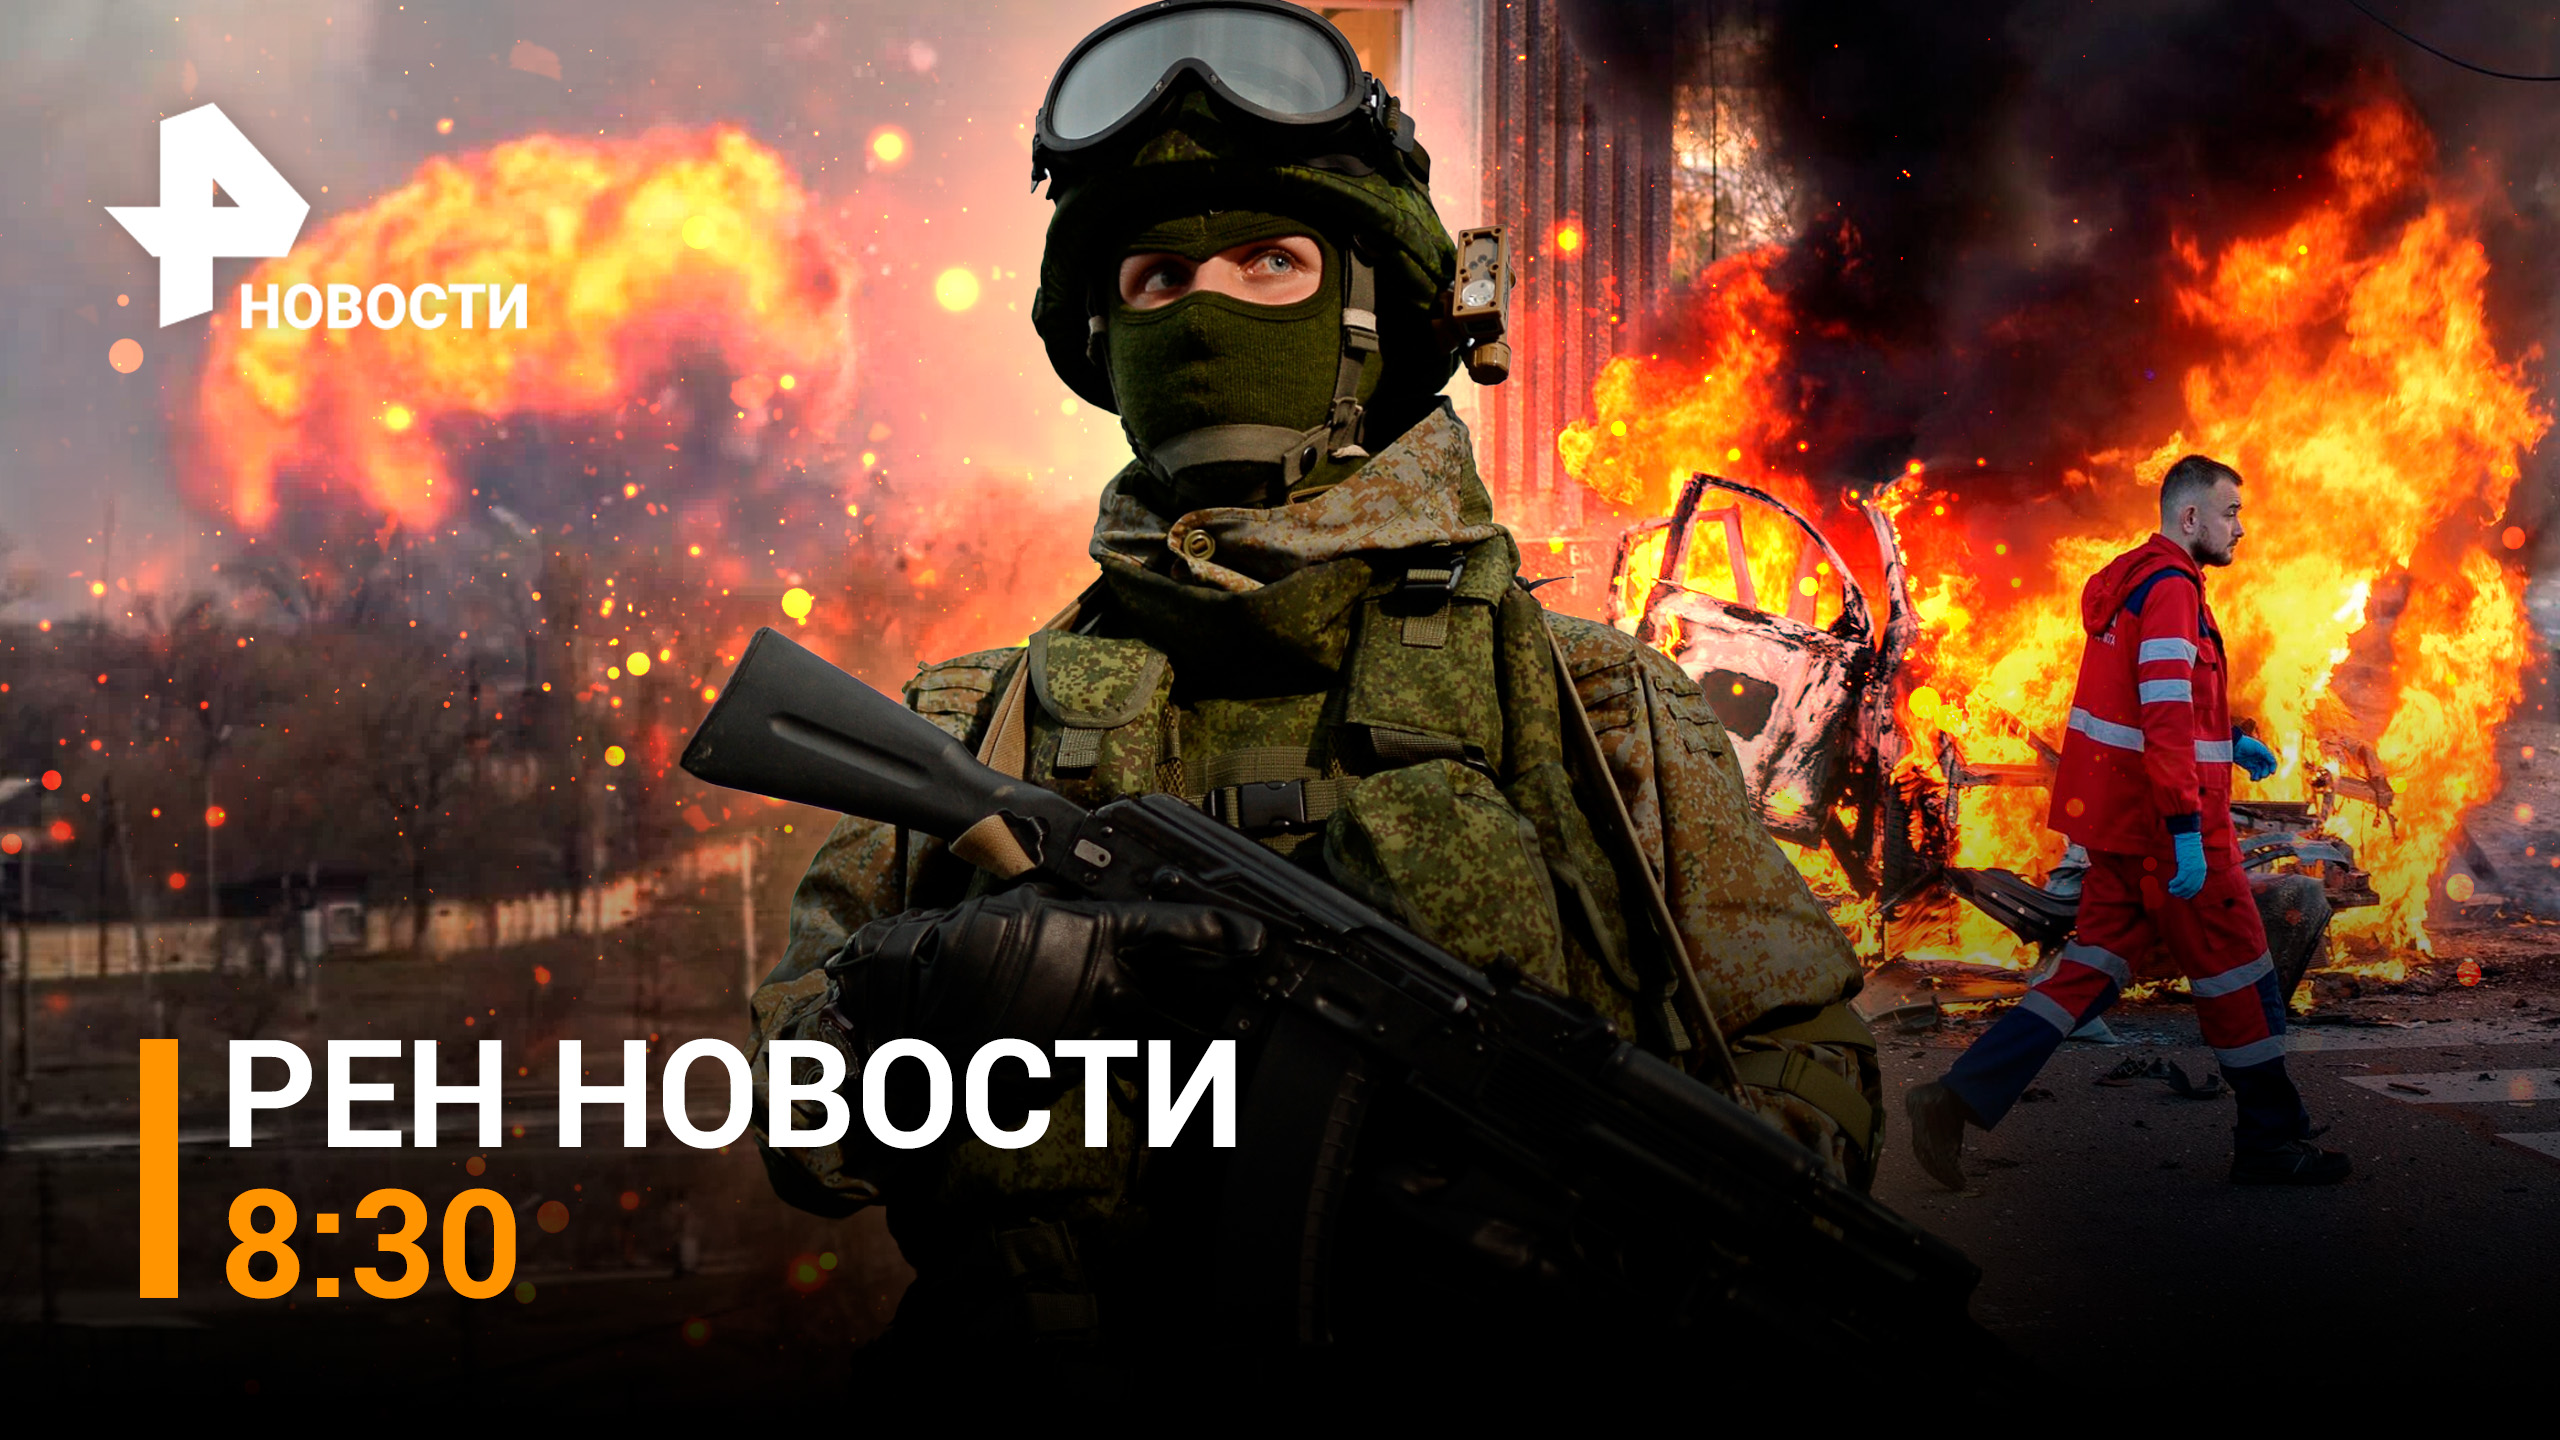 Продолжение ударов по инфраструктуре киевского режима: Никополь, Киев / РЕН НОВОСТИ 8:30 от 12.10.22